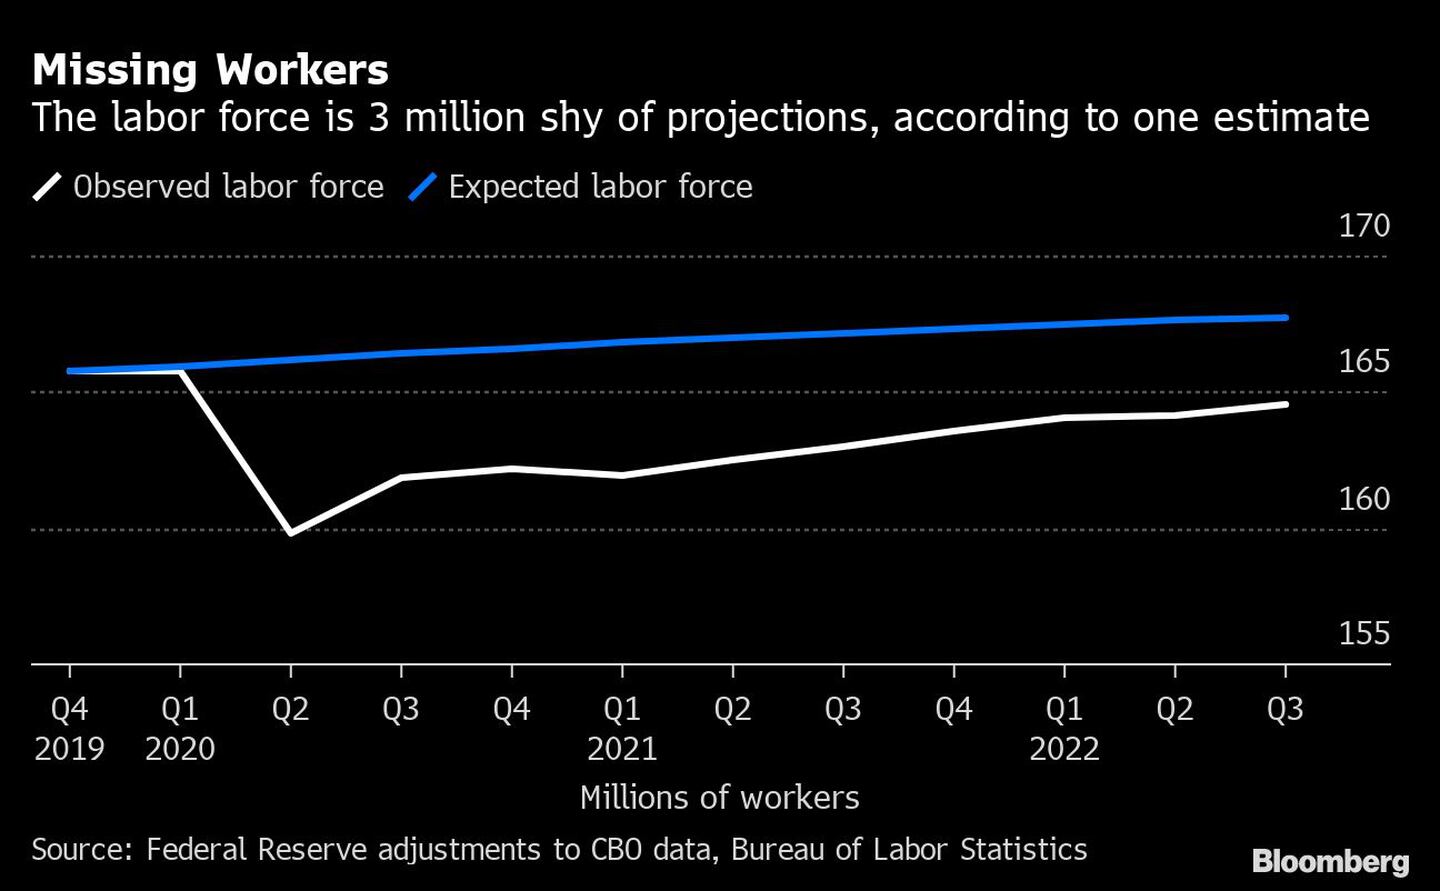 La fuerza laboral de EE.UU. tiene 3 millones de trabajadores menos, según una estimacióndfd